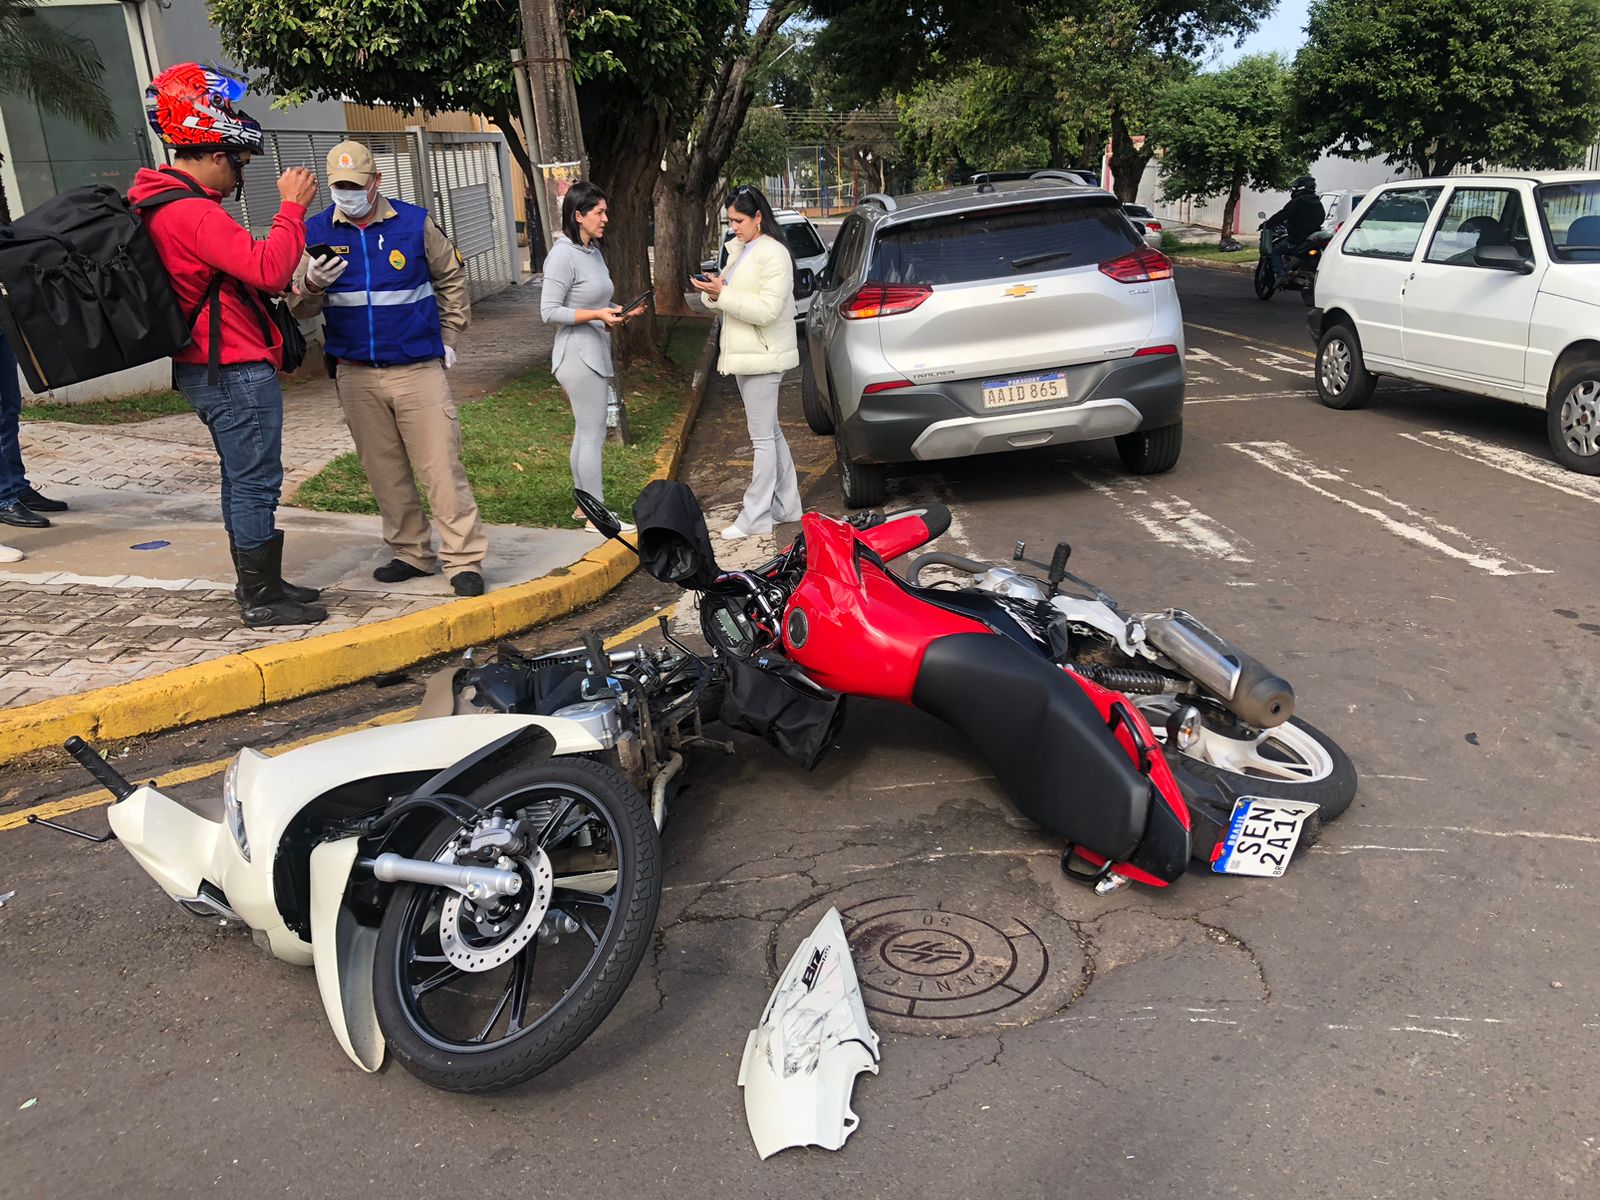 Jornal Ilustrado - Três pessoas ficam feridas em acidentes distintos no centro de Umuarama